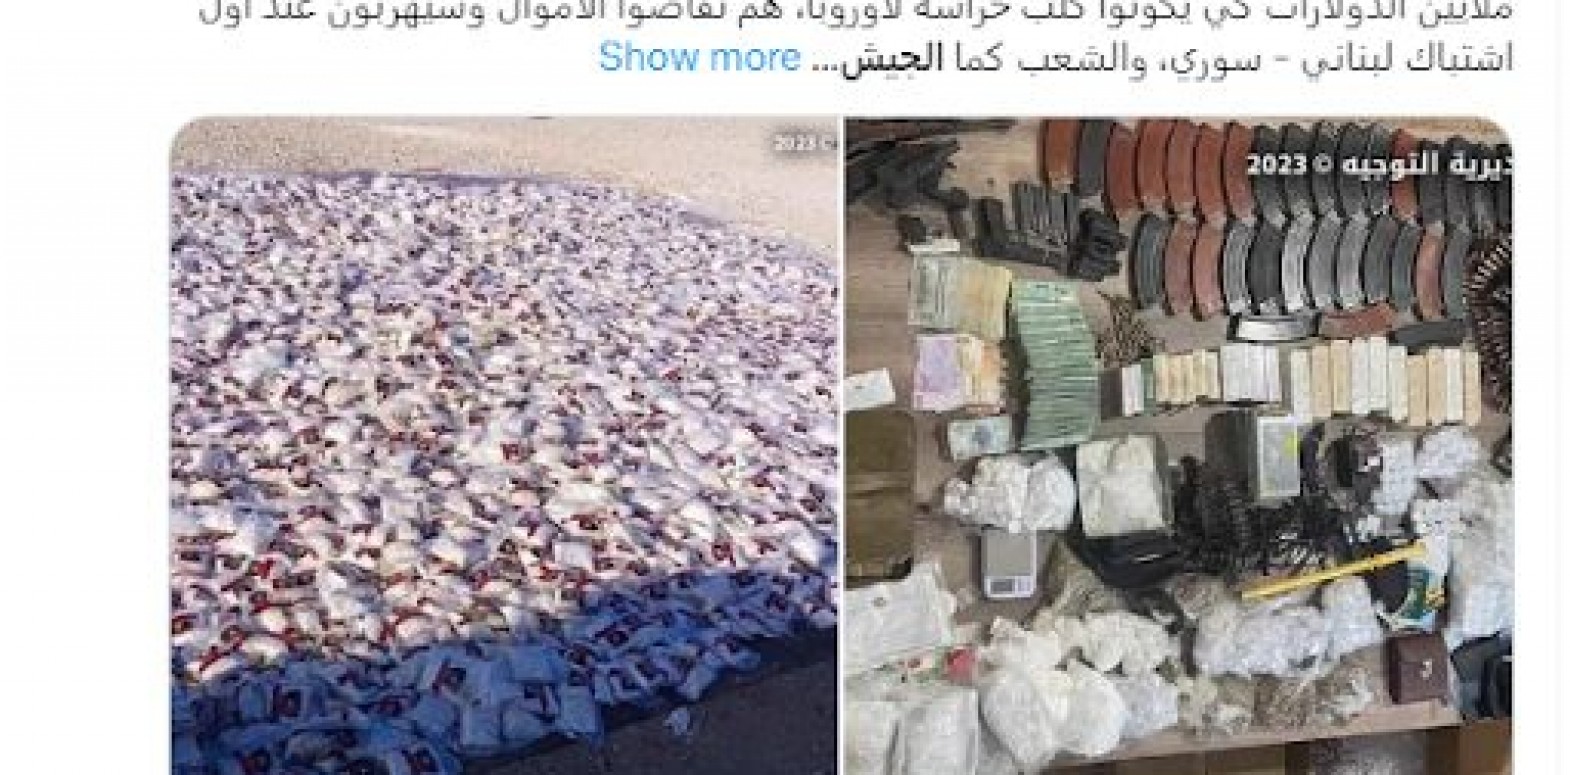 الصور ليست لـ "أسلحة ومخدرات صادرها الجيش اللبناني من أحد مخيمات السوريين"